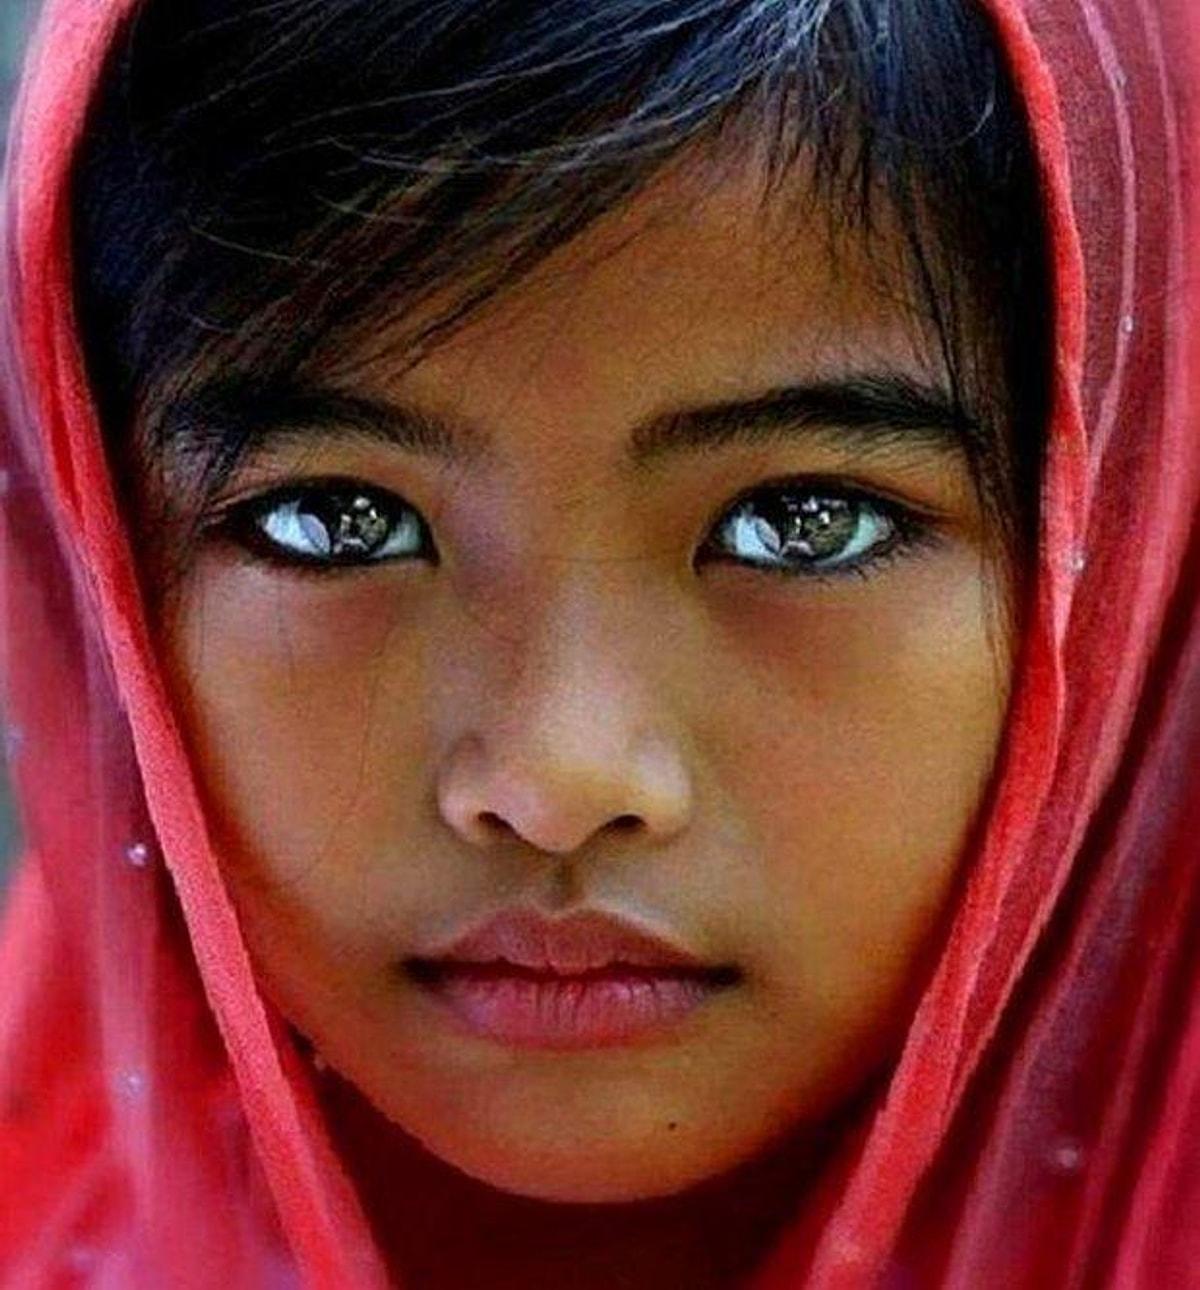 Самого редкого человека. Девочка с необычными глазами. Самые красивые глаза. Необычные красивые глаза. Необычный цвет глаз.